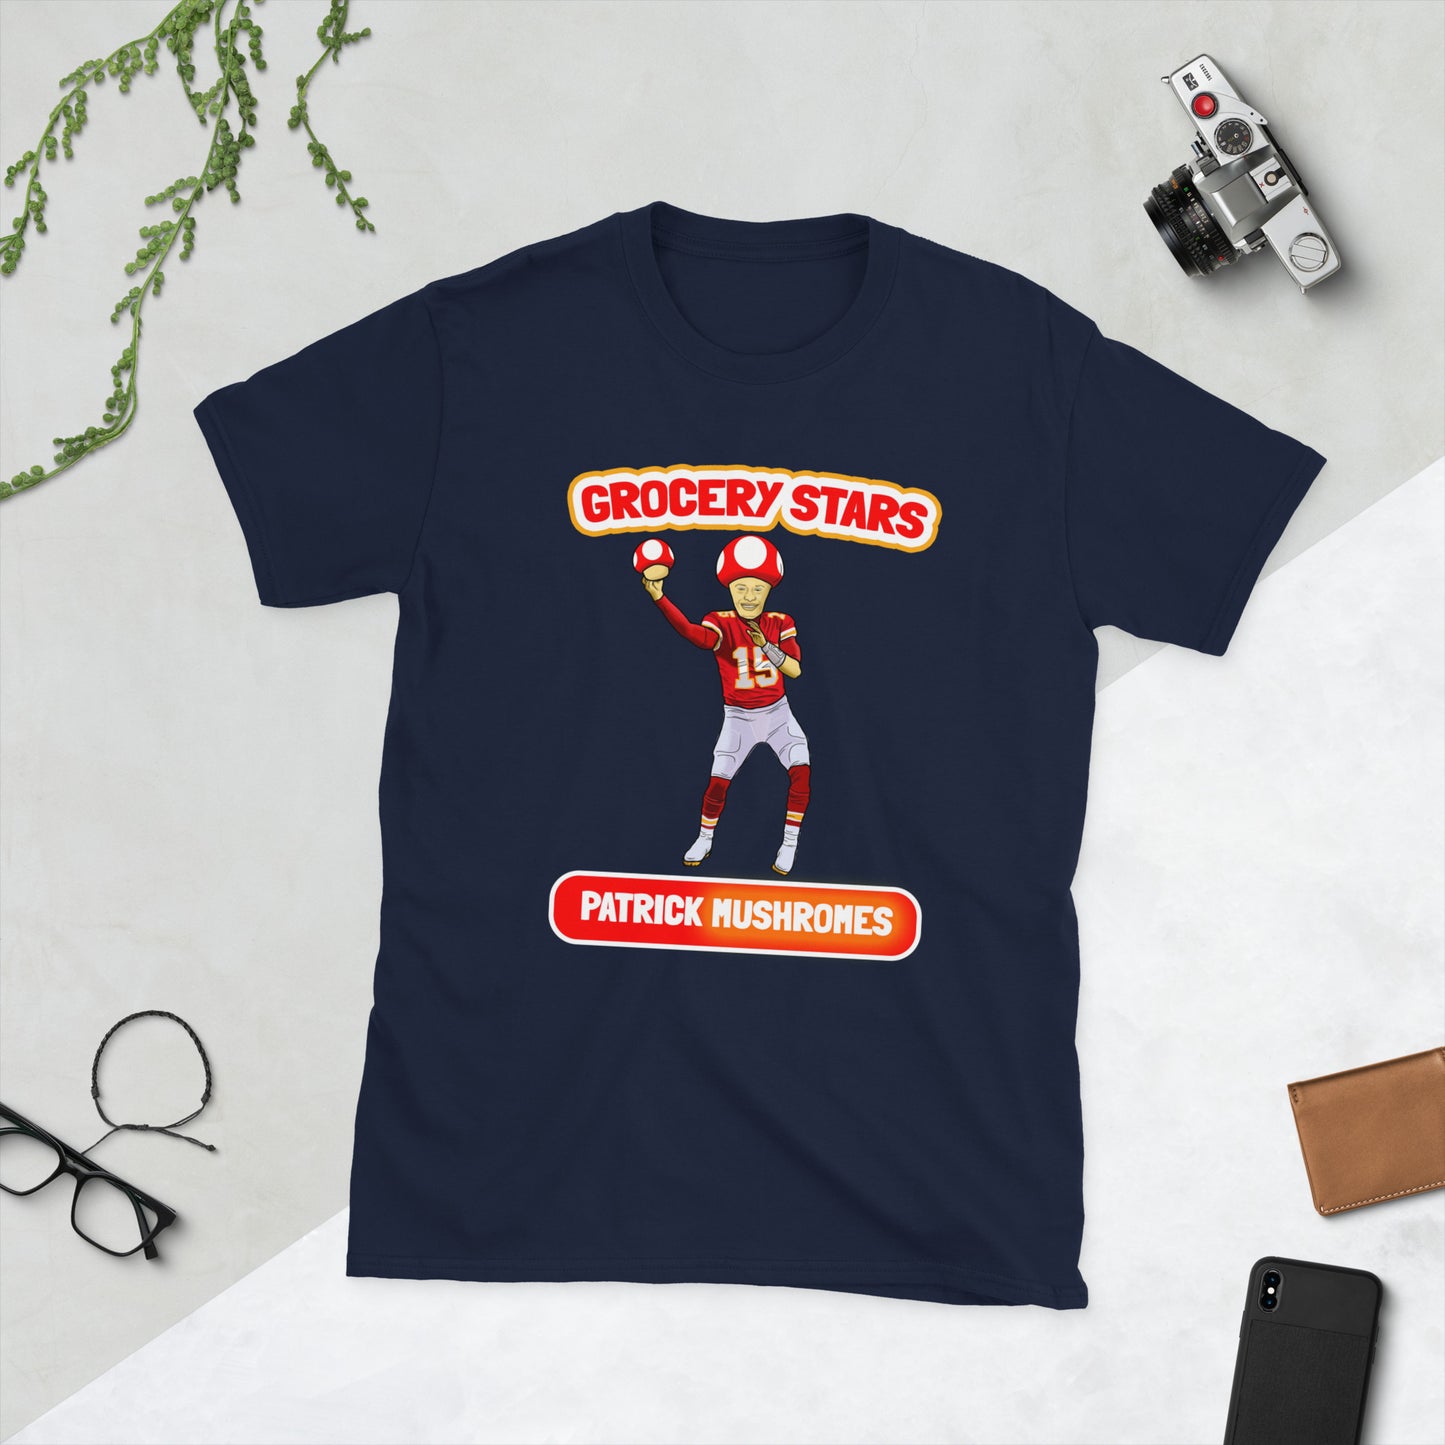 Patrick Mushromes - Adult Short-Sleeve T-Shirt